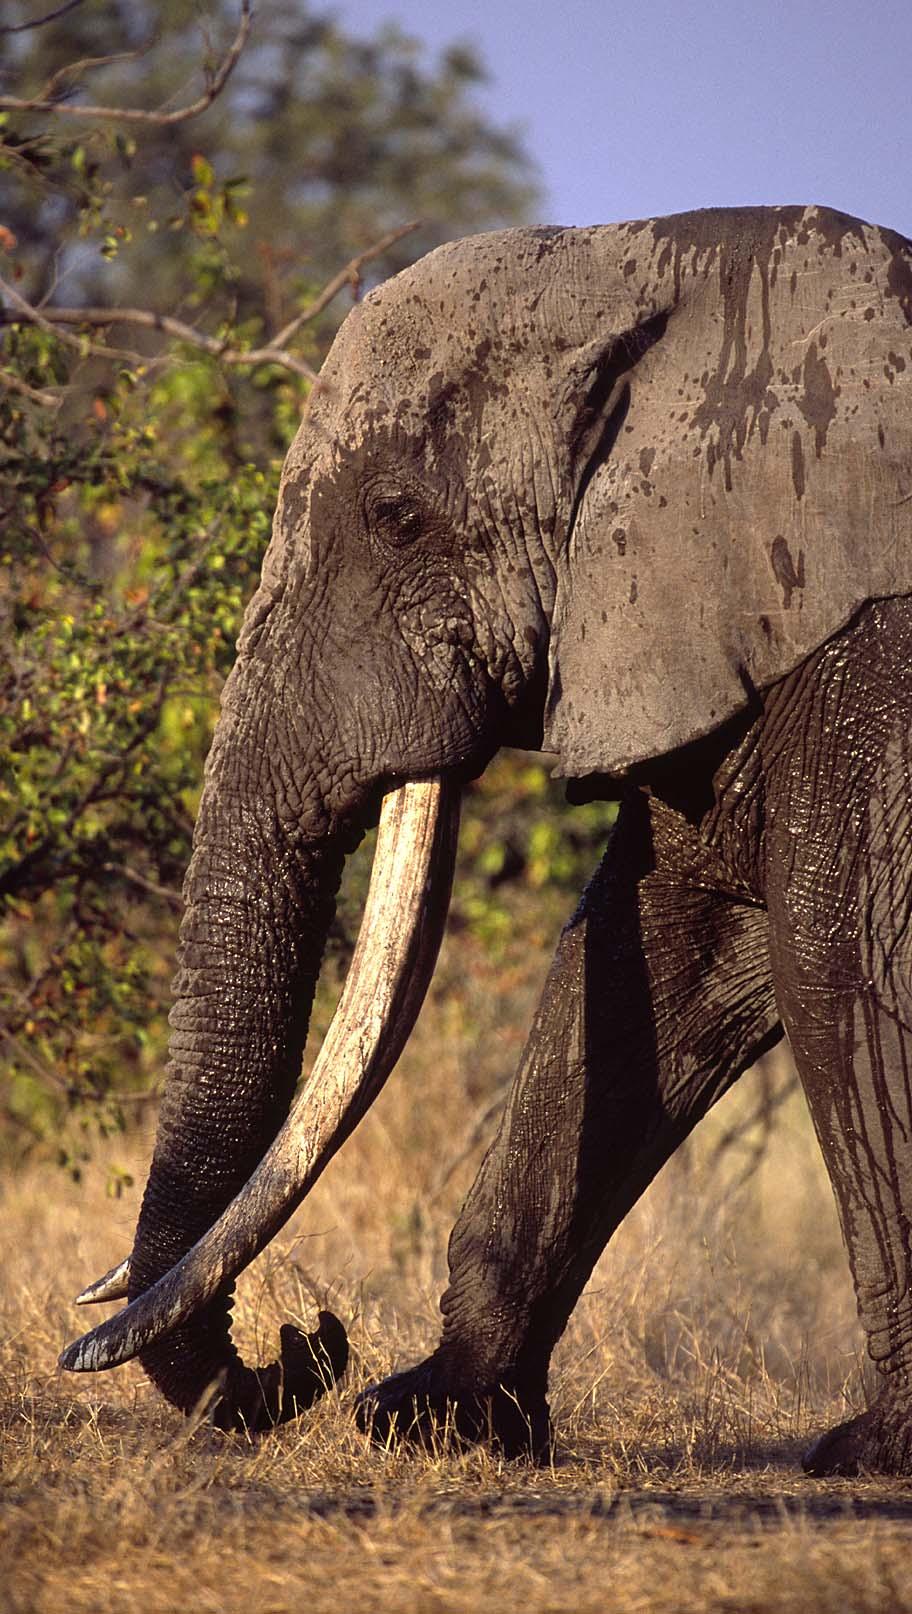 Population numbers - Kruger National Park - Number of elephants 12000 10000 8000 Culling 6000 1965 1975 1985 1995